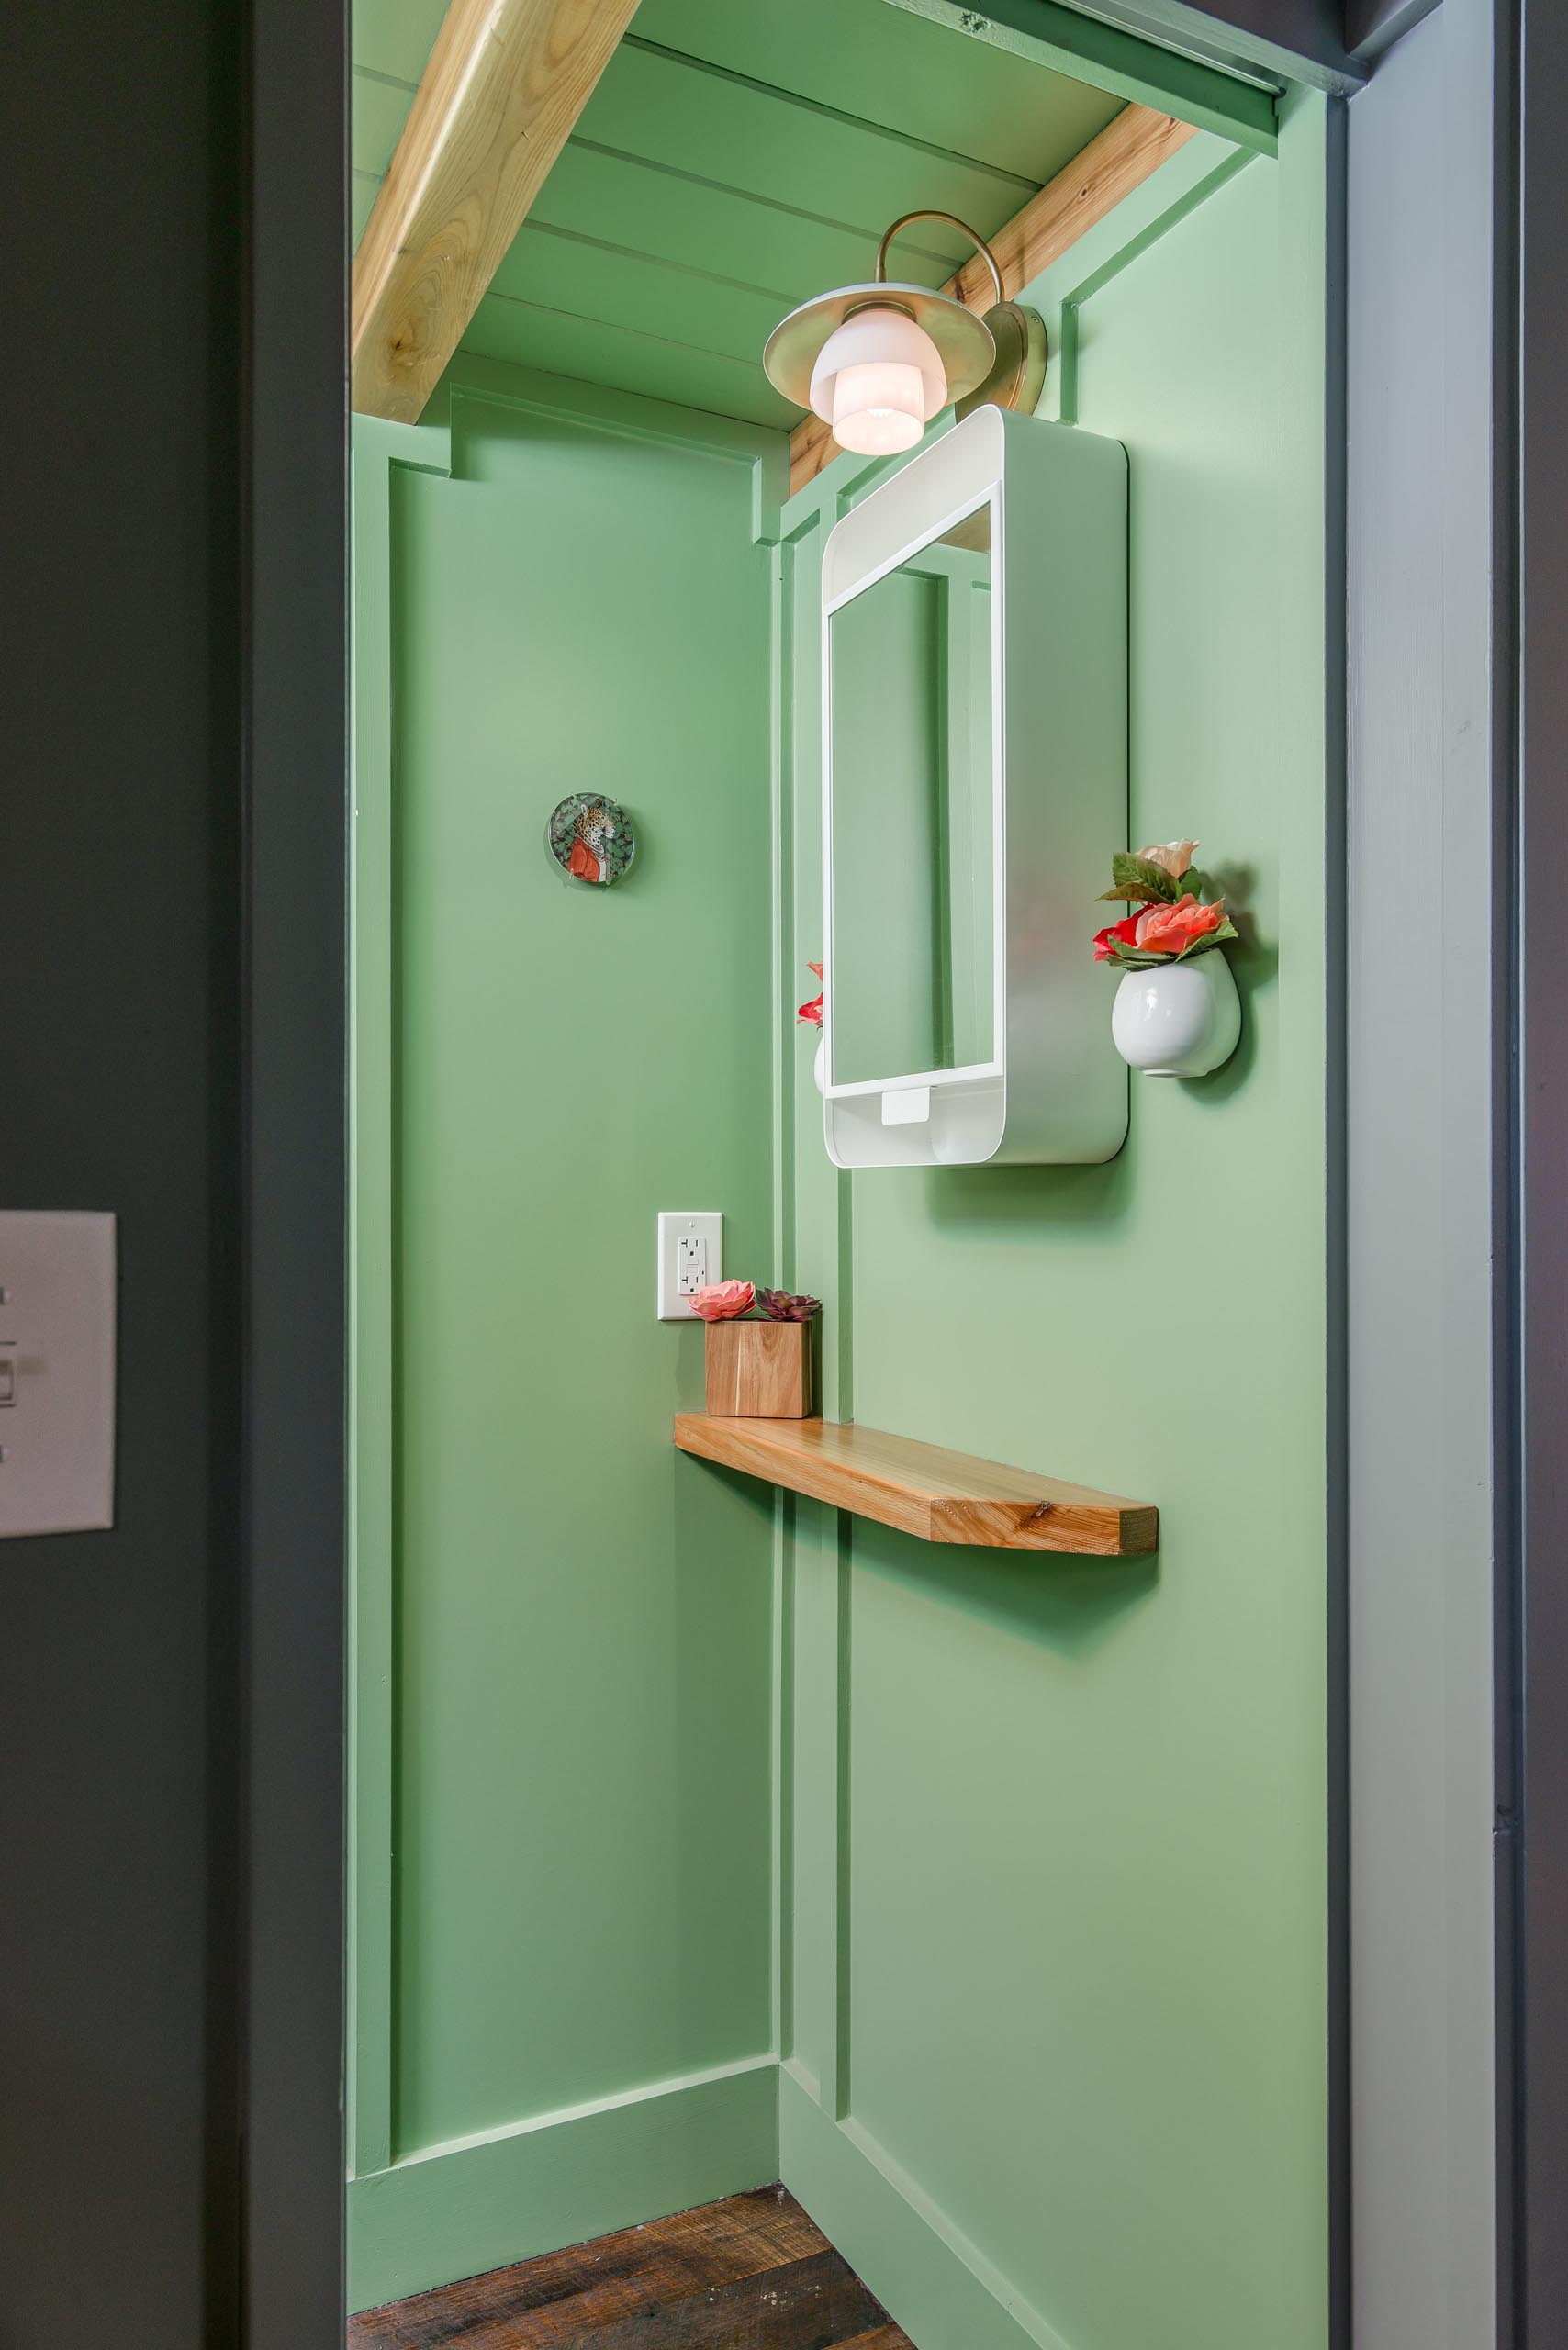 Эта крошечная ванная комната в доме скрывается за раздвижной дверью-карманом и включает в себя пастельно-зеленую отделку, безводный туалет, туалетный столик и душ.